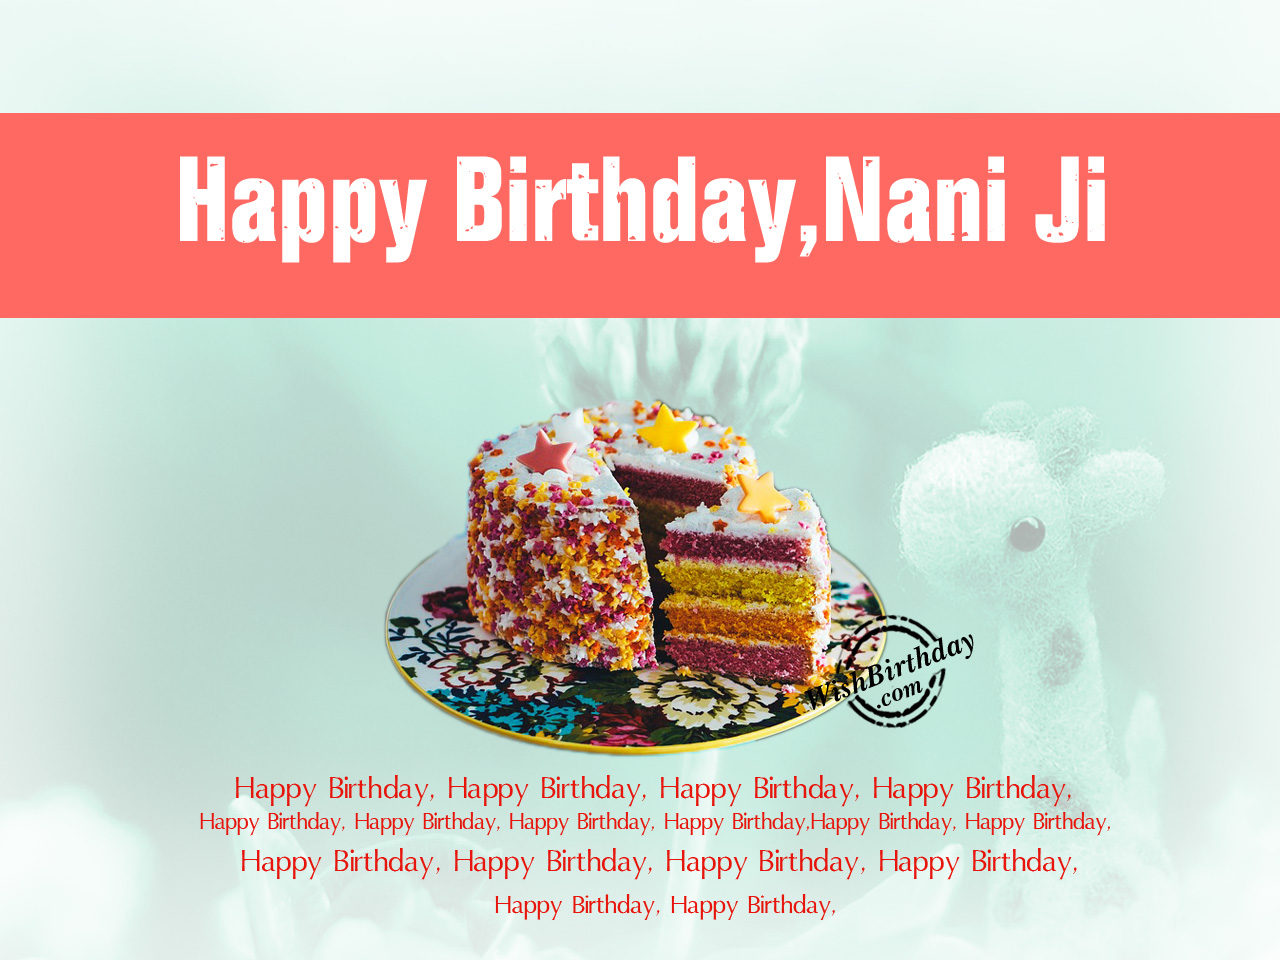 Happy Birthday Nani Ji - Birthday Wishes, Happy Birthday Pictures